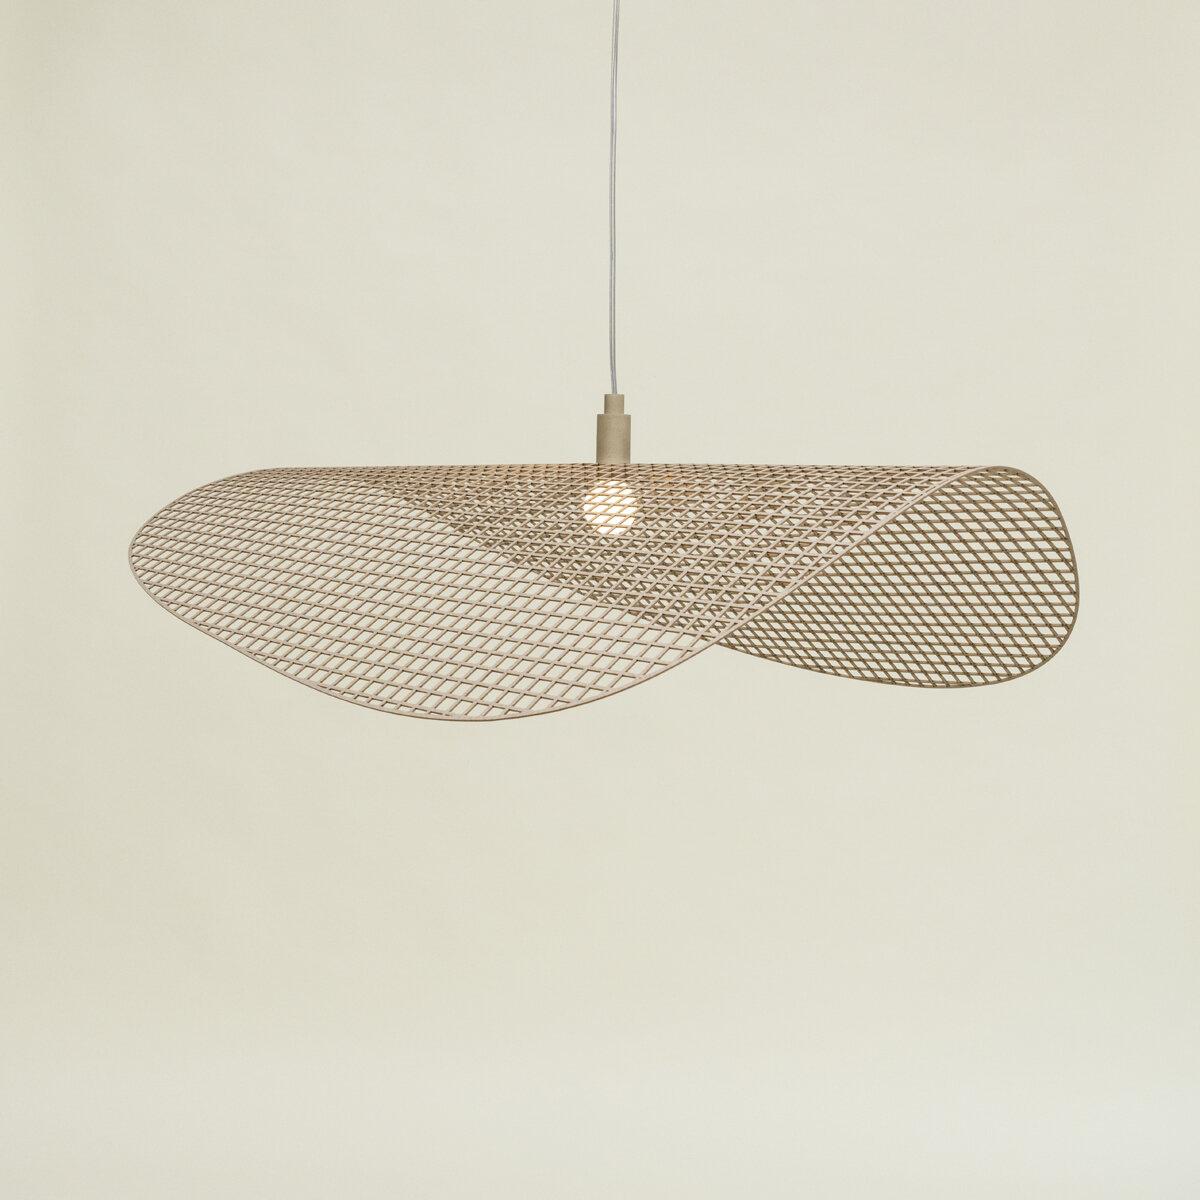 2. Grid hanglamp - Studio HENK